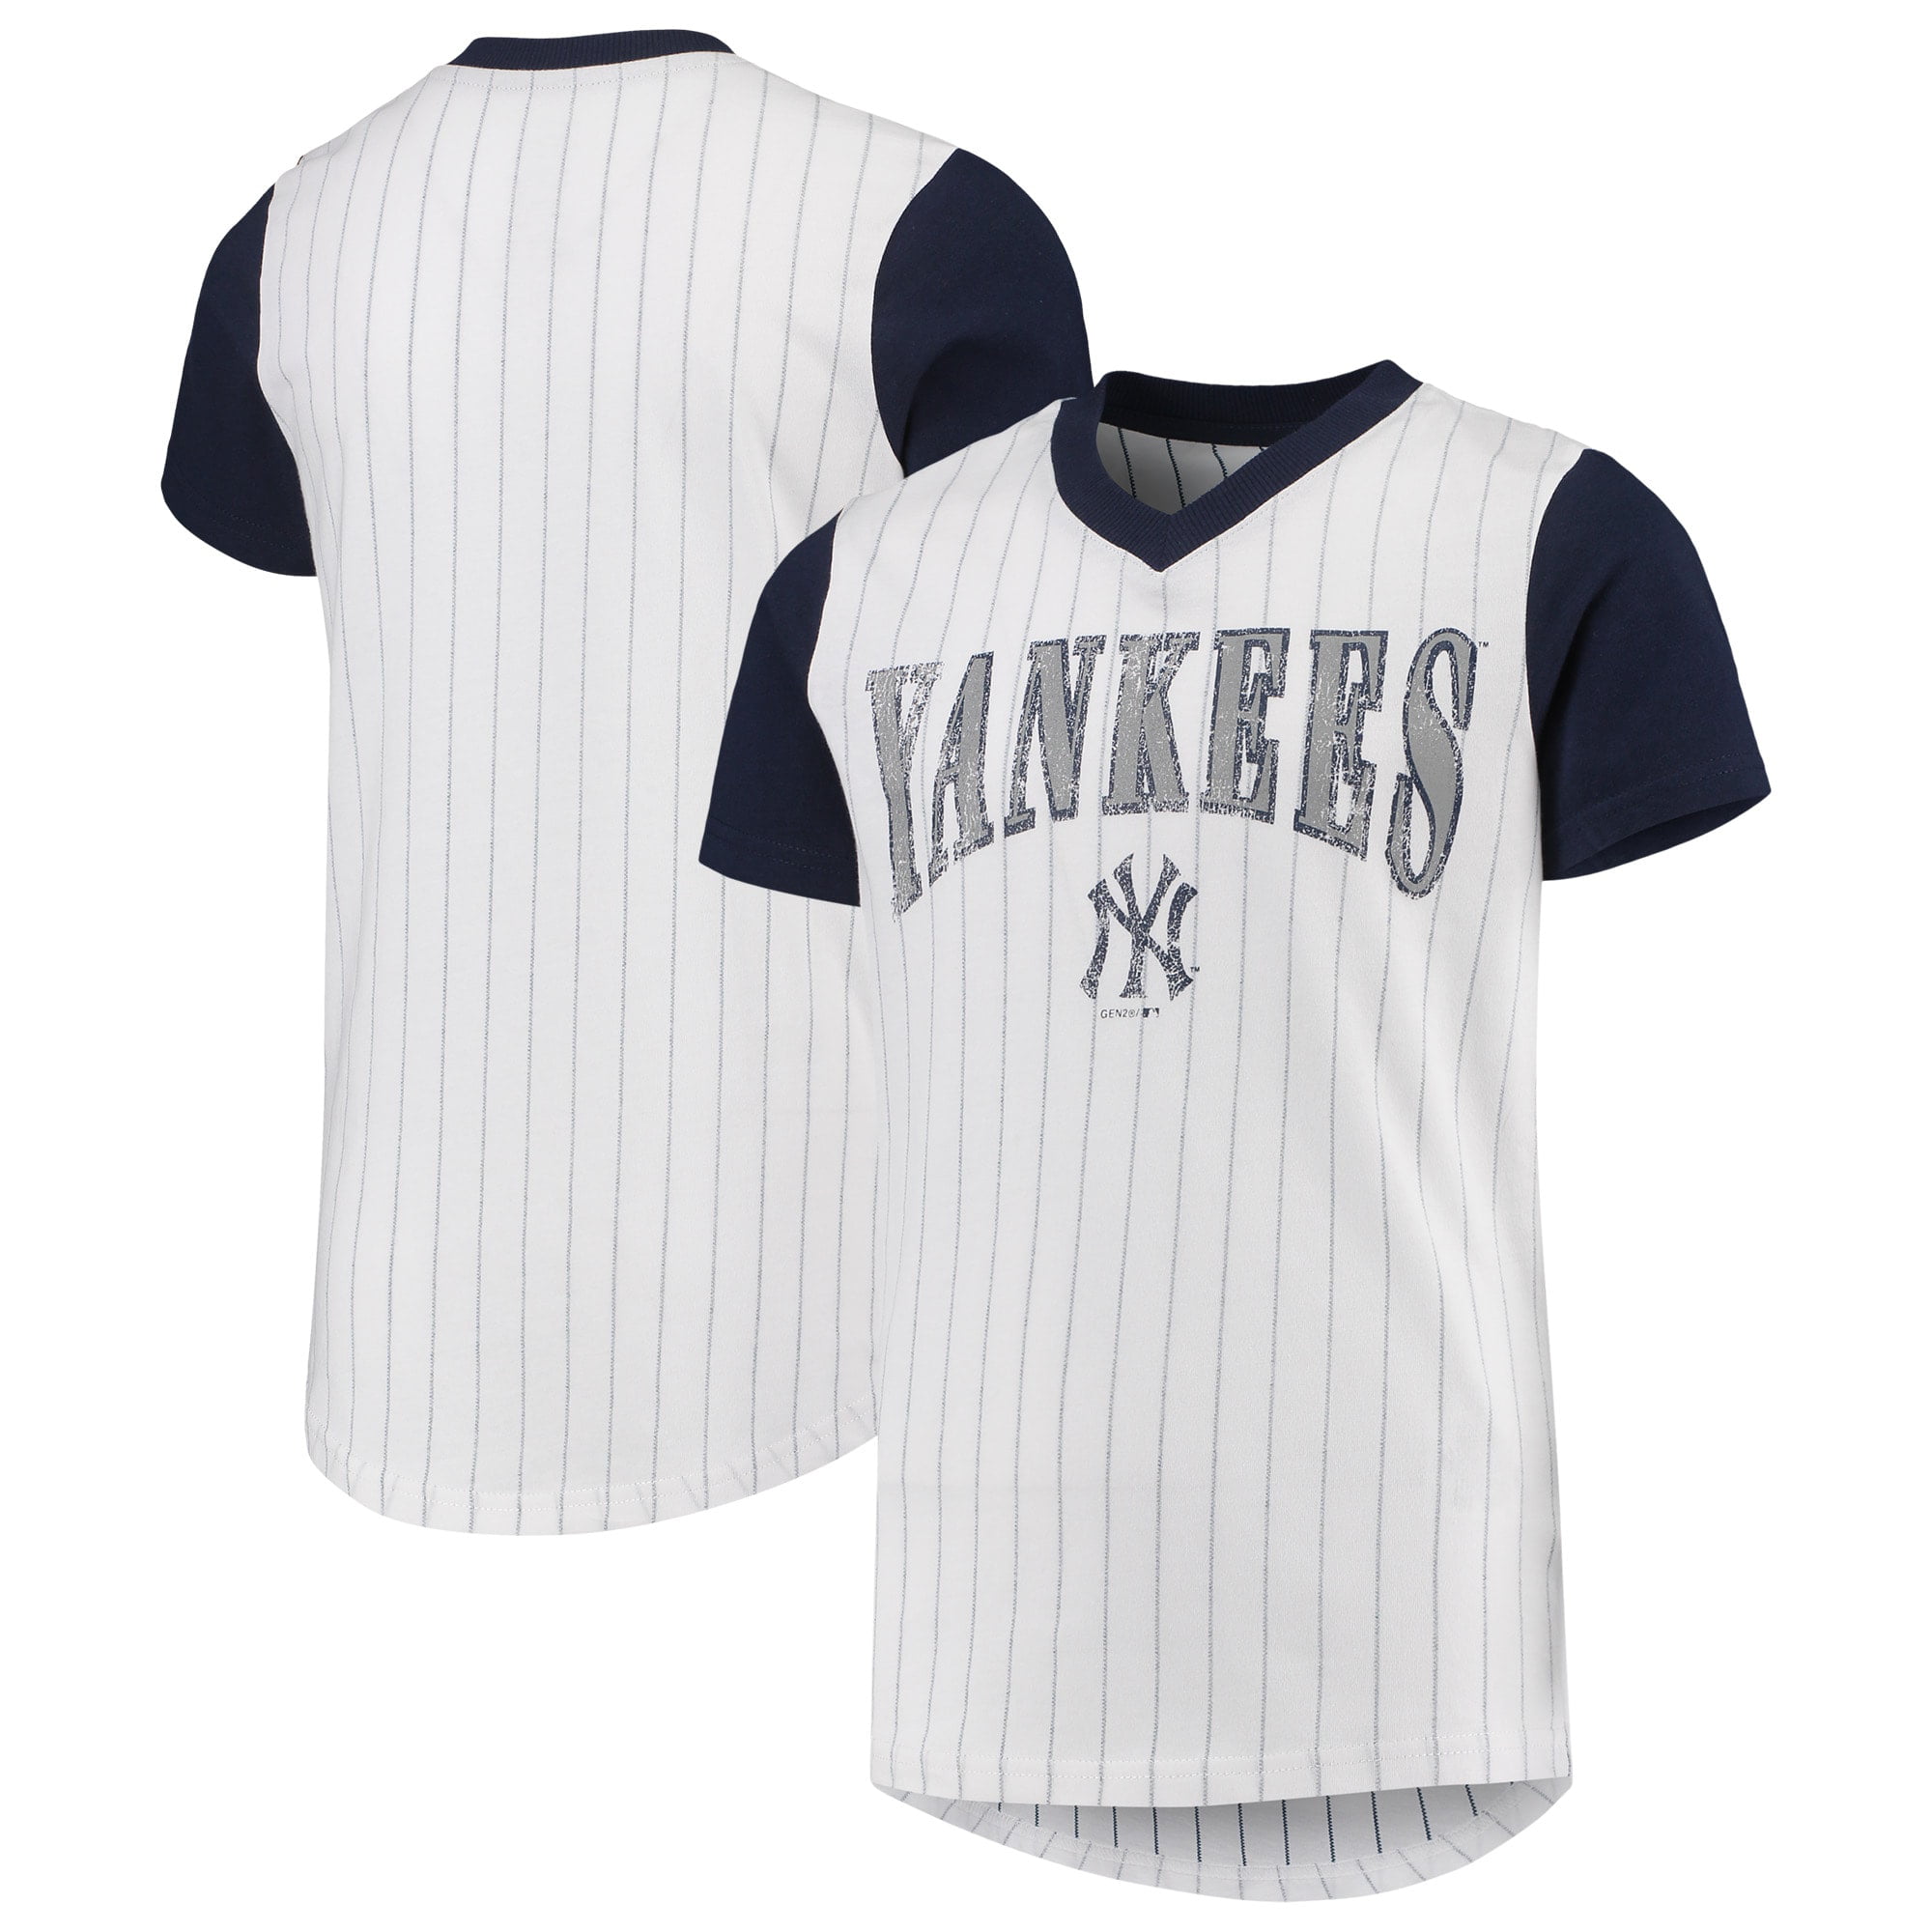 New York Yankees Youth Heavy Hitter V-Neck T-Shirt - White/Navy ...